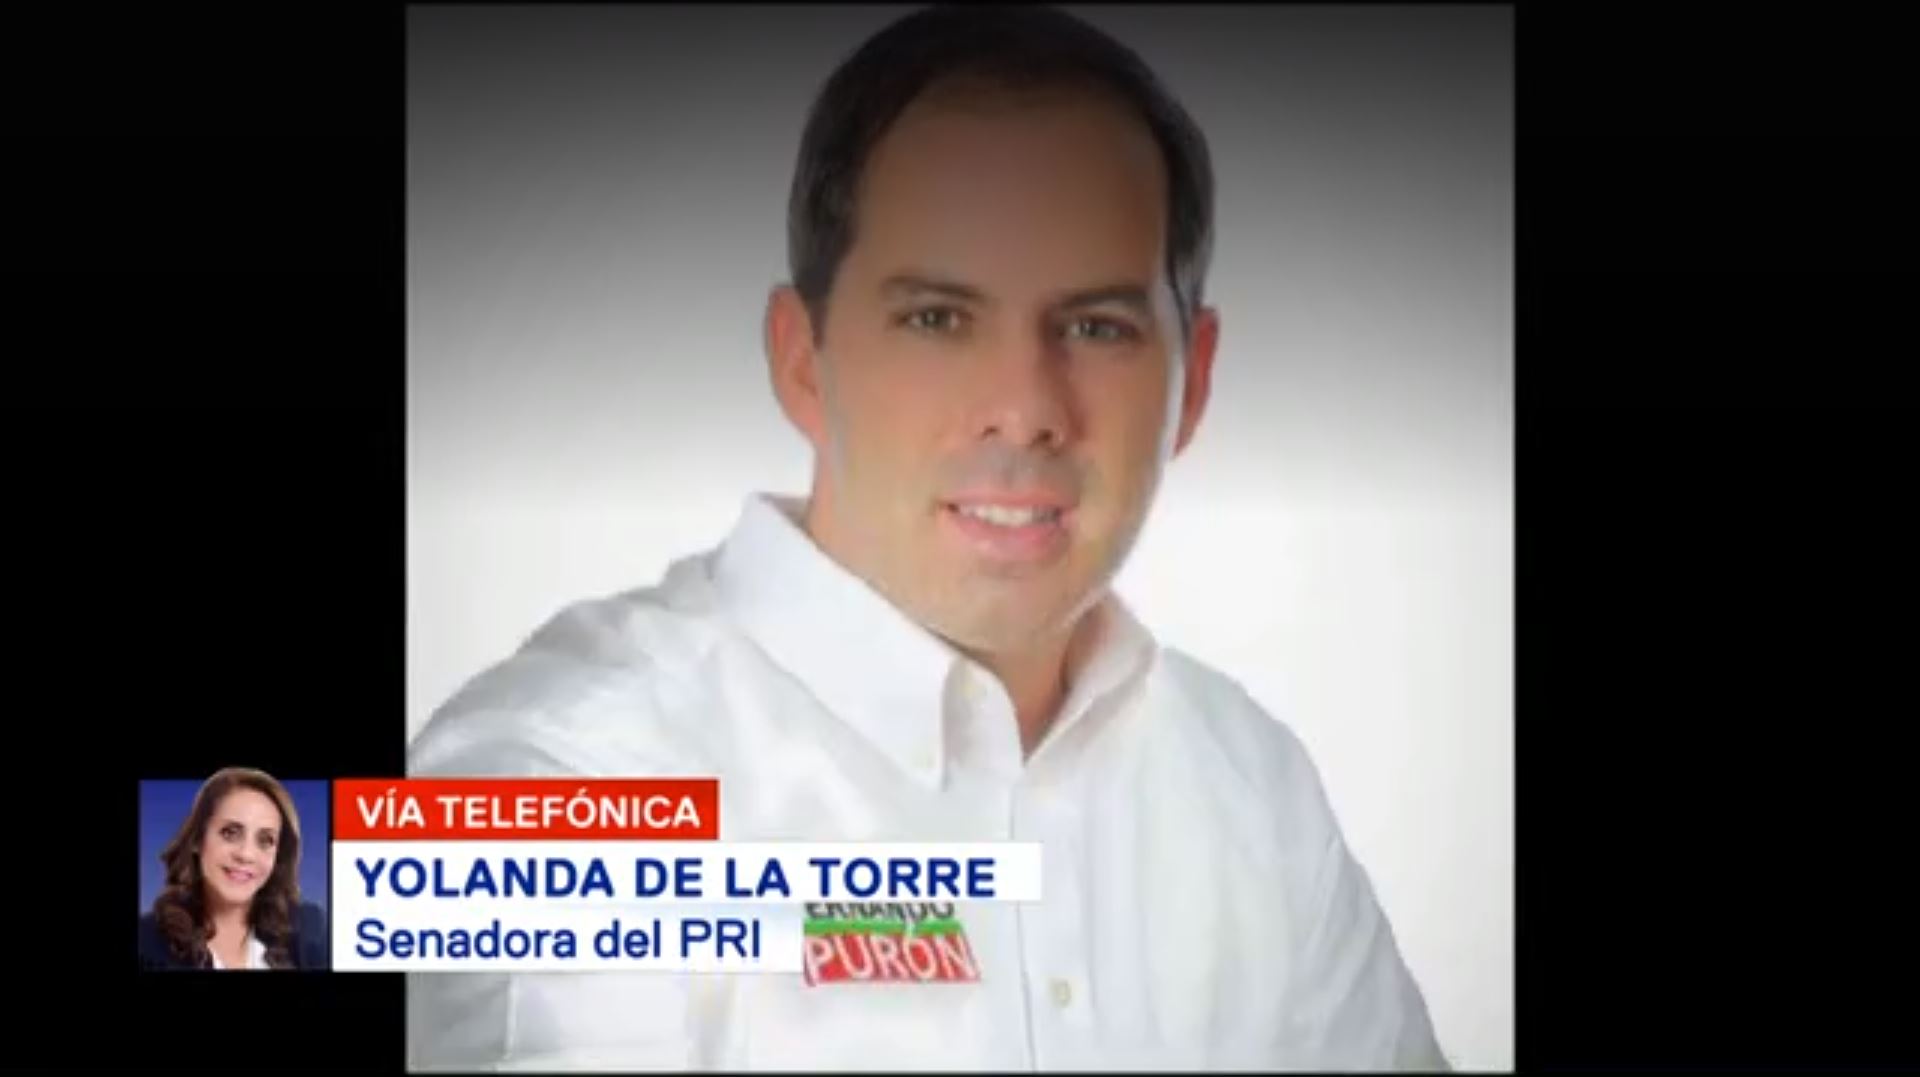 Fernando Purón Recibió Amenazas Senadora PRI